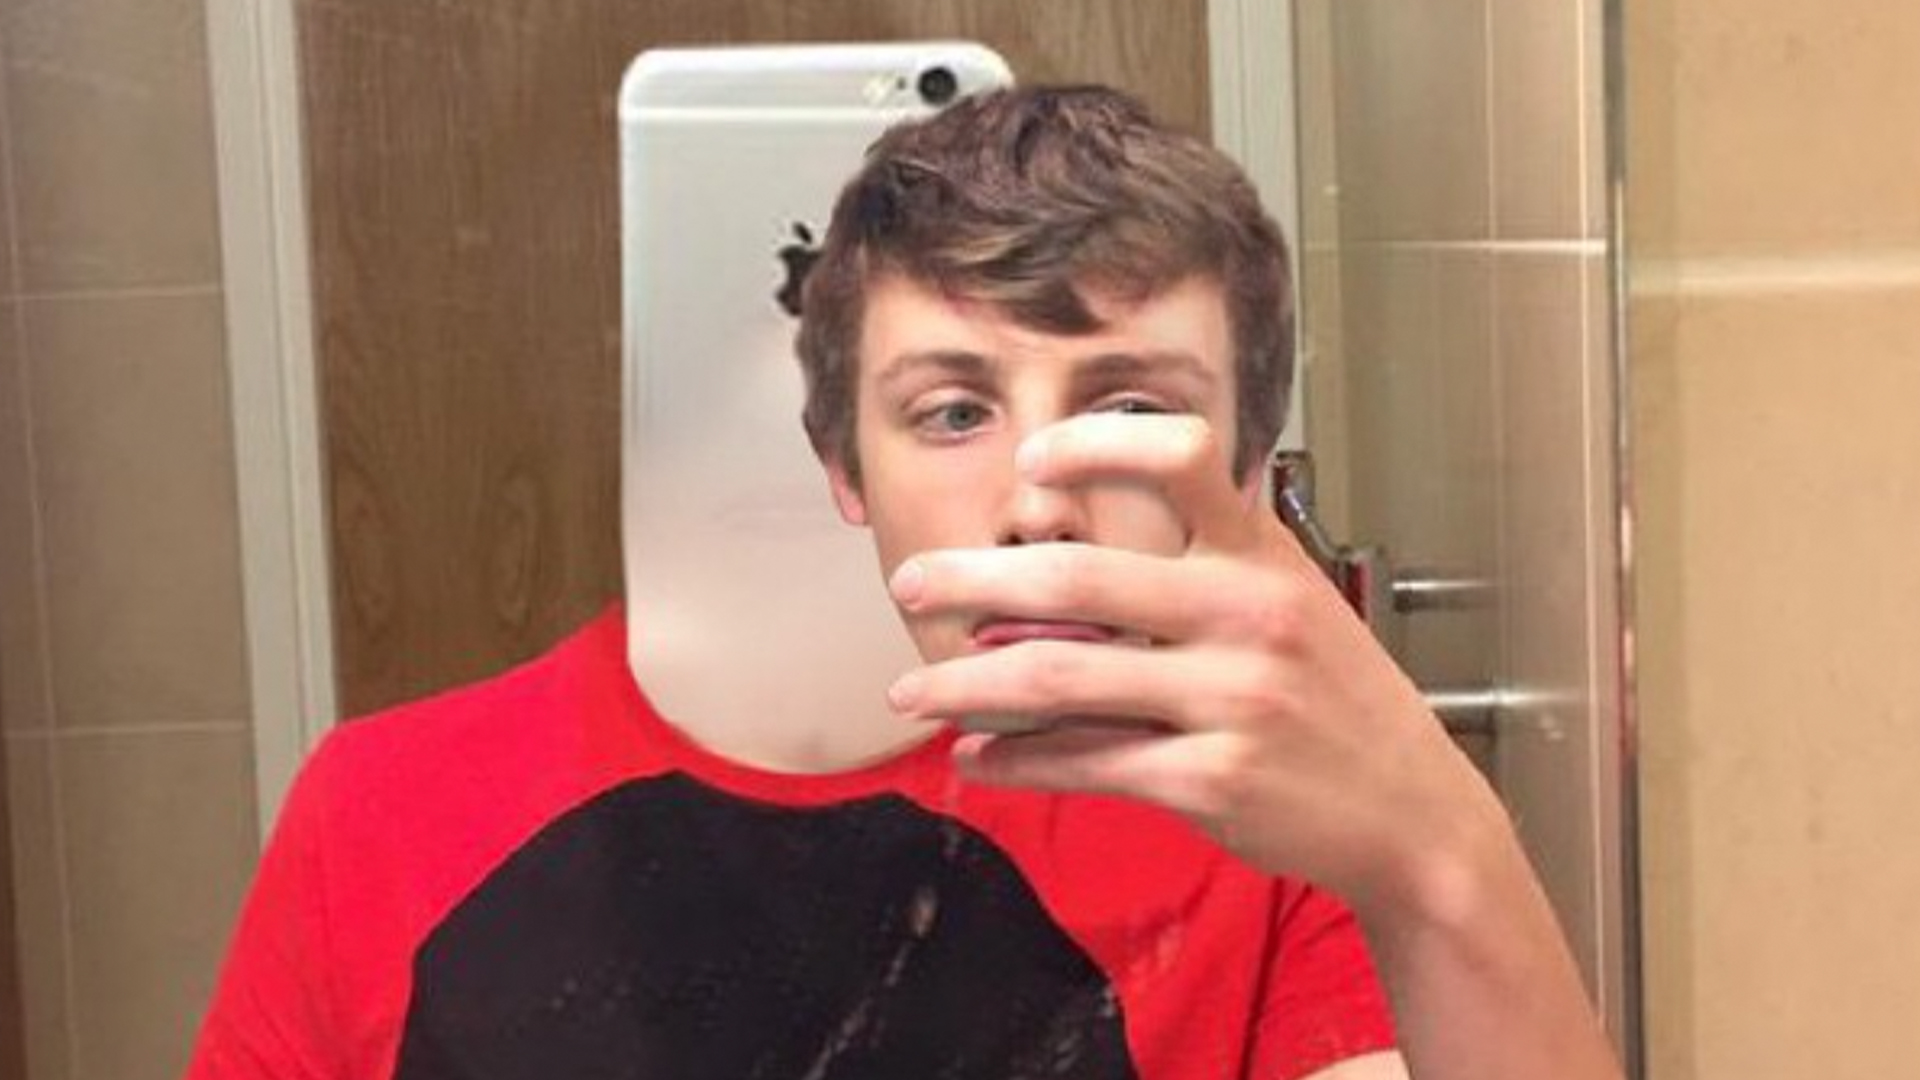 W2S doing a selfie in a bathroom mirror